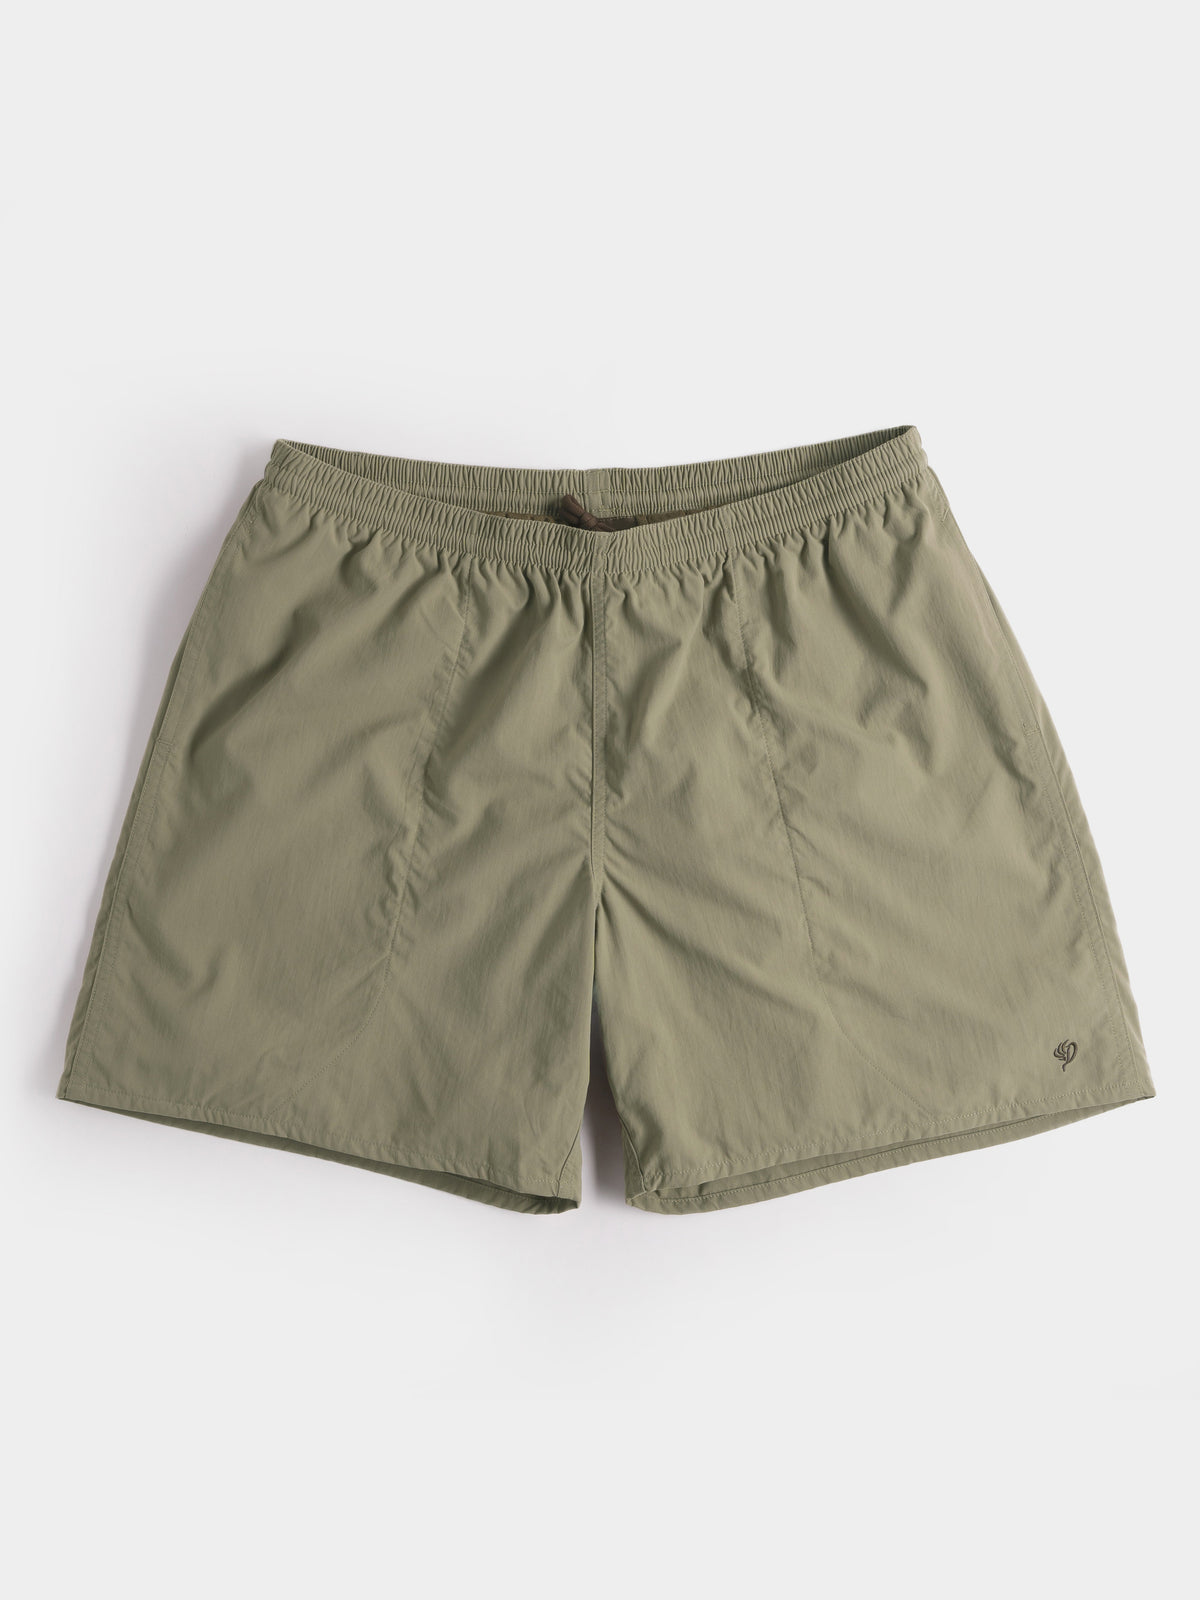 Scout Shorts 7" - Sagebrush